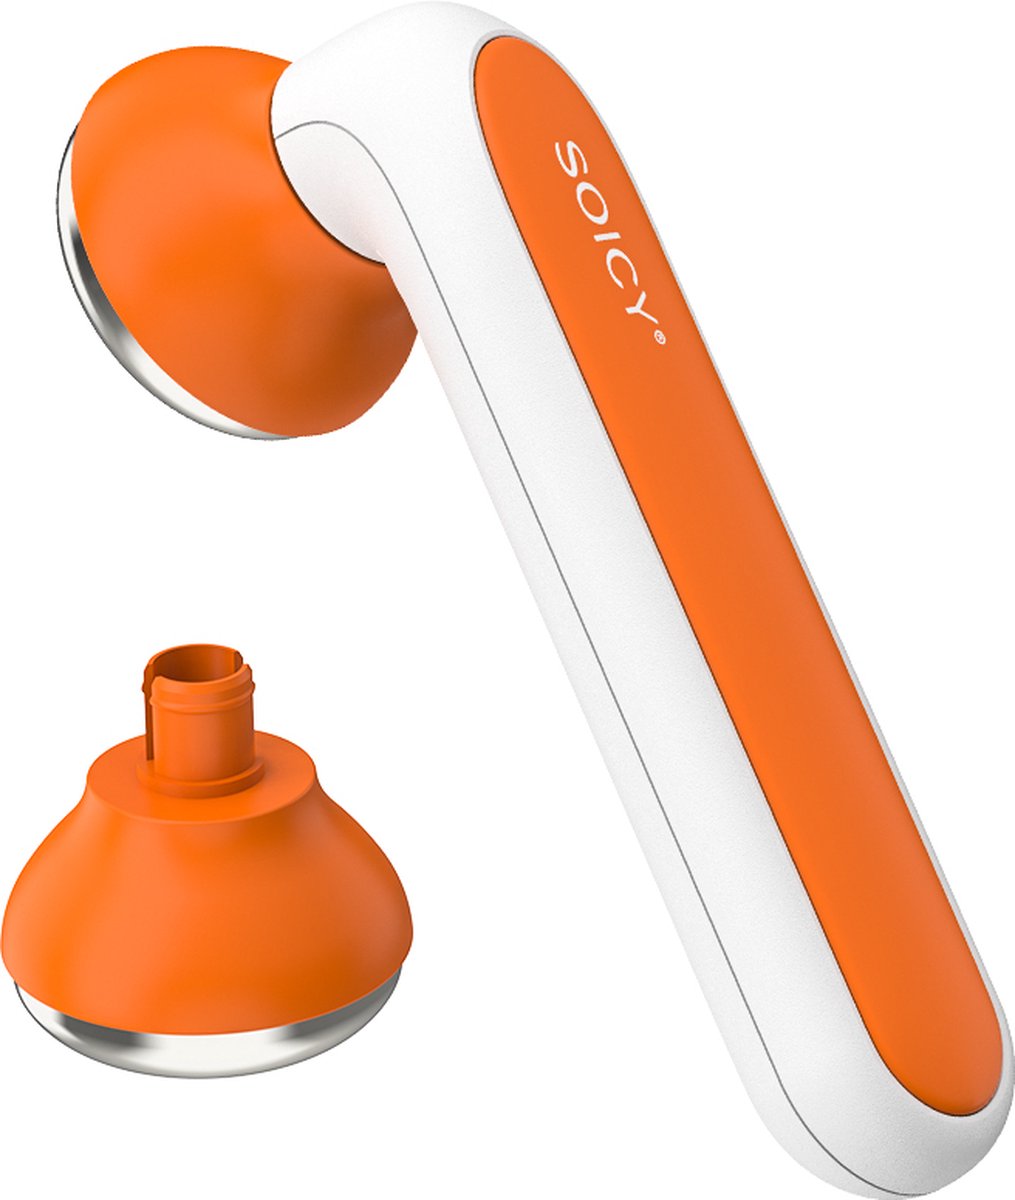 Soicy S40 Ijsmassageroller 360graden met afneembare kop – Oranje